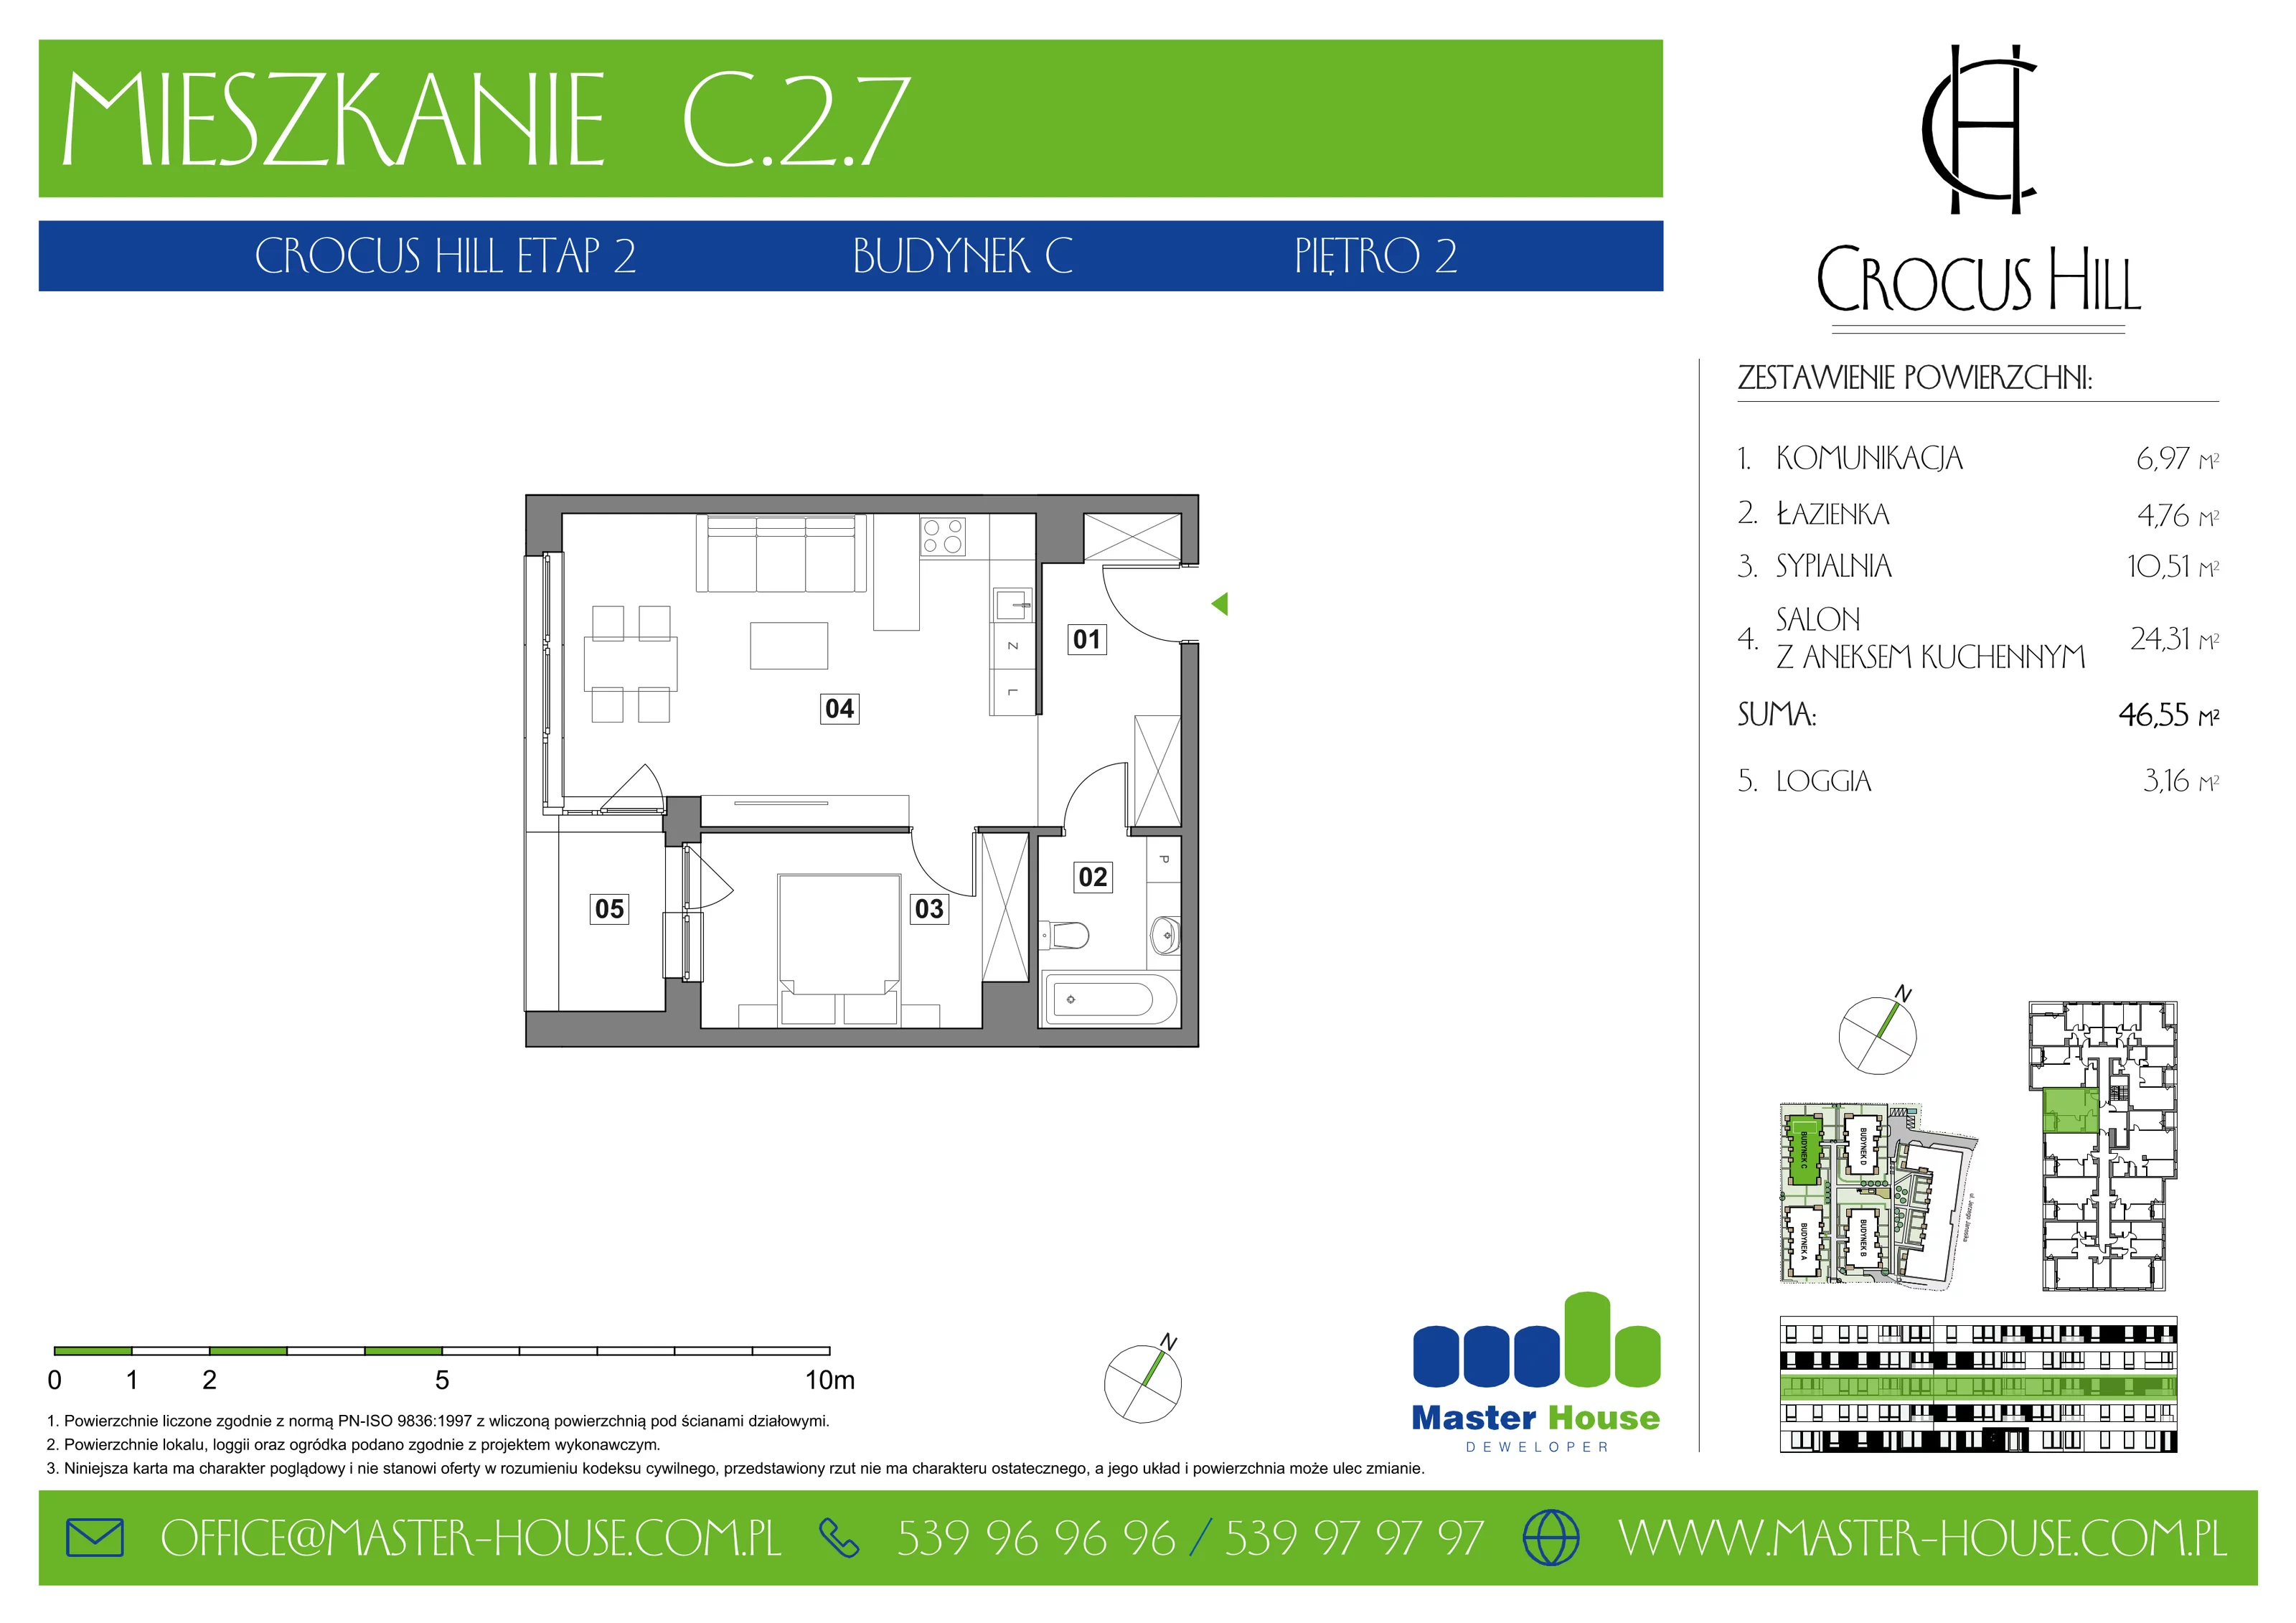 Mieszkanie 46,55 m², piętro 2, oferta nr C.2.7, Crocus Hill, Szczecin, Śródmieście, ul. Jerzego Janosika 2, 2A, 3, 3A